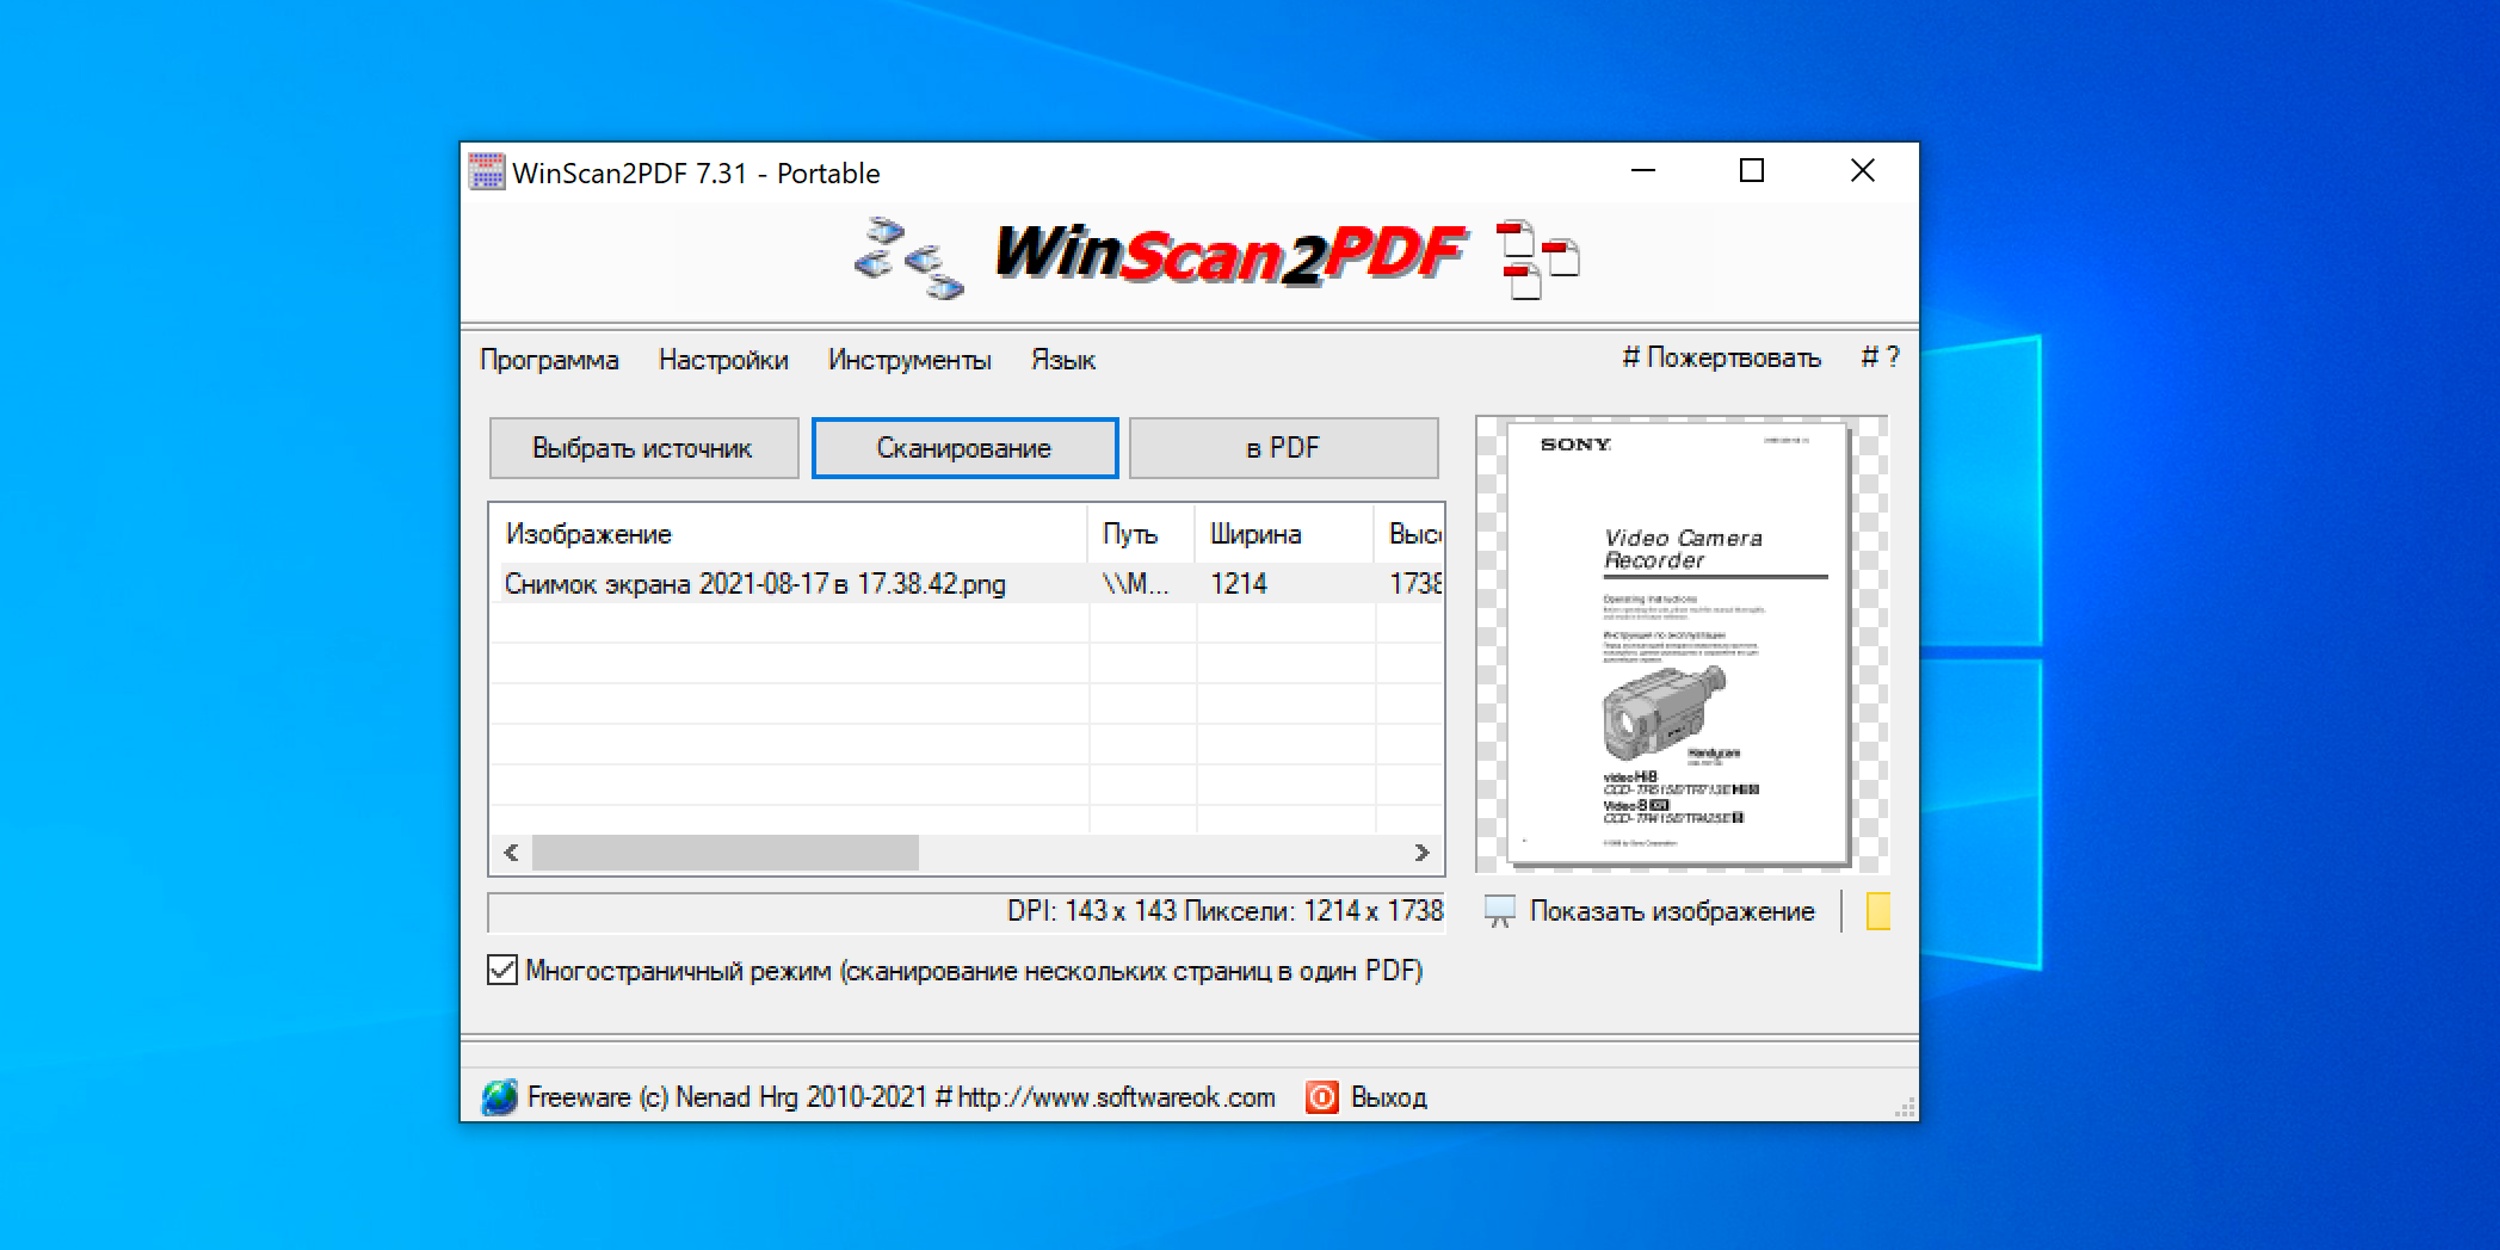 Функции и возможности программы WinScan2PDF